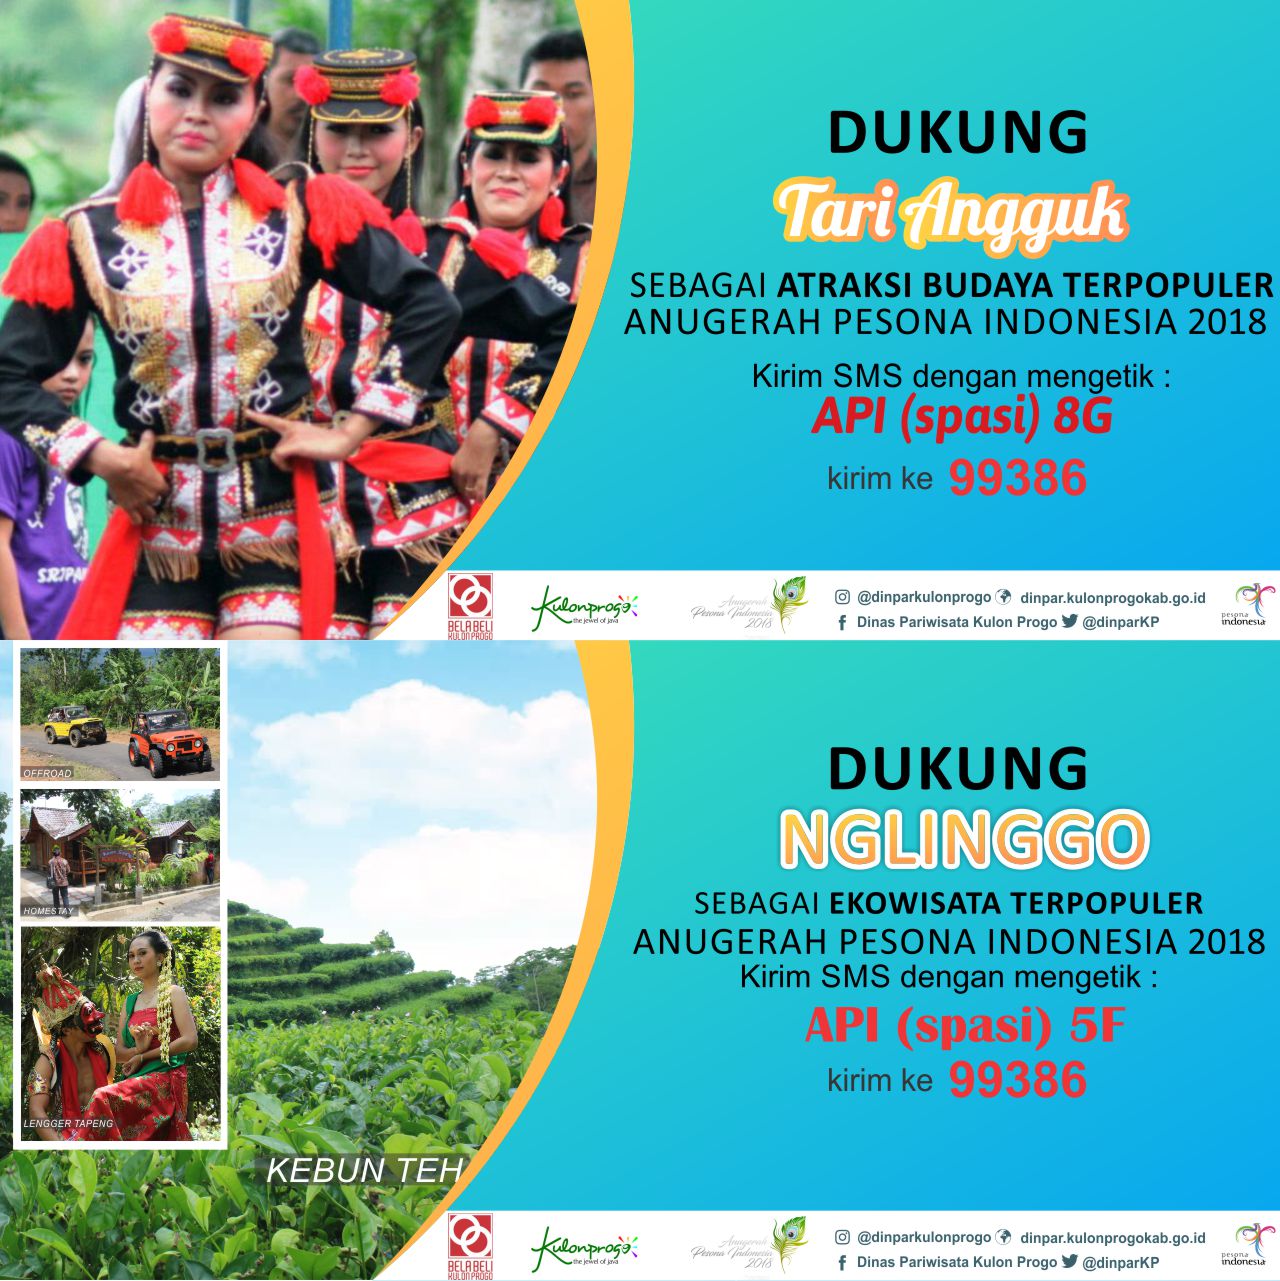 Dukung Tari Angguk dan Nglinggo Dalam Anugerah Pesona Indonesia 2018